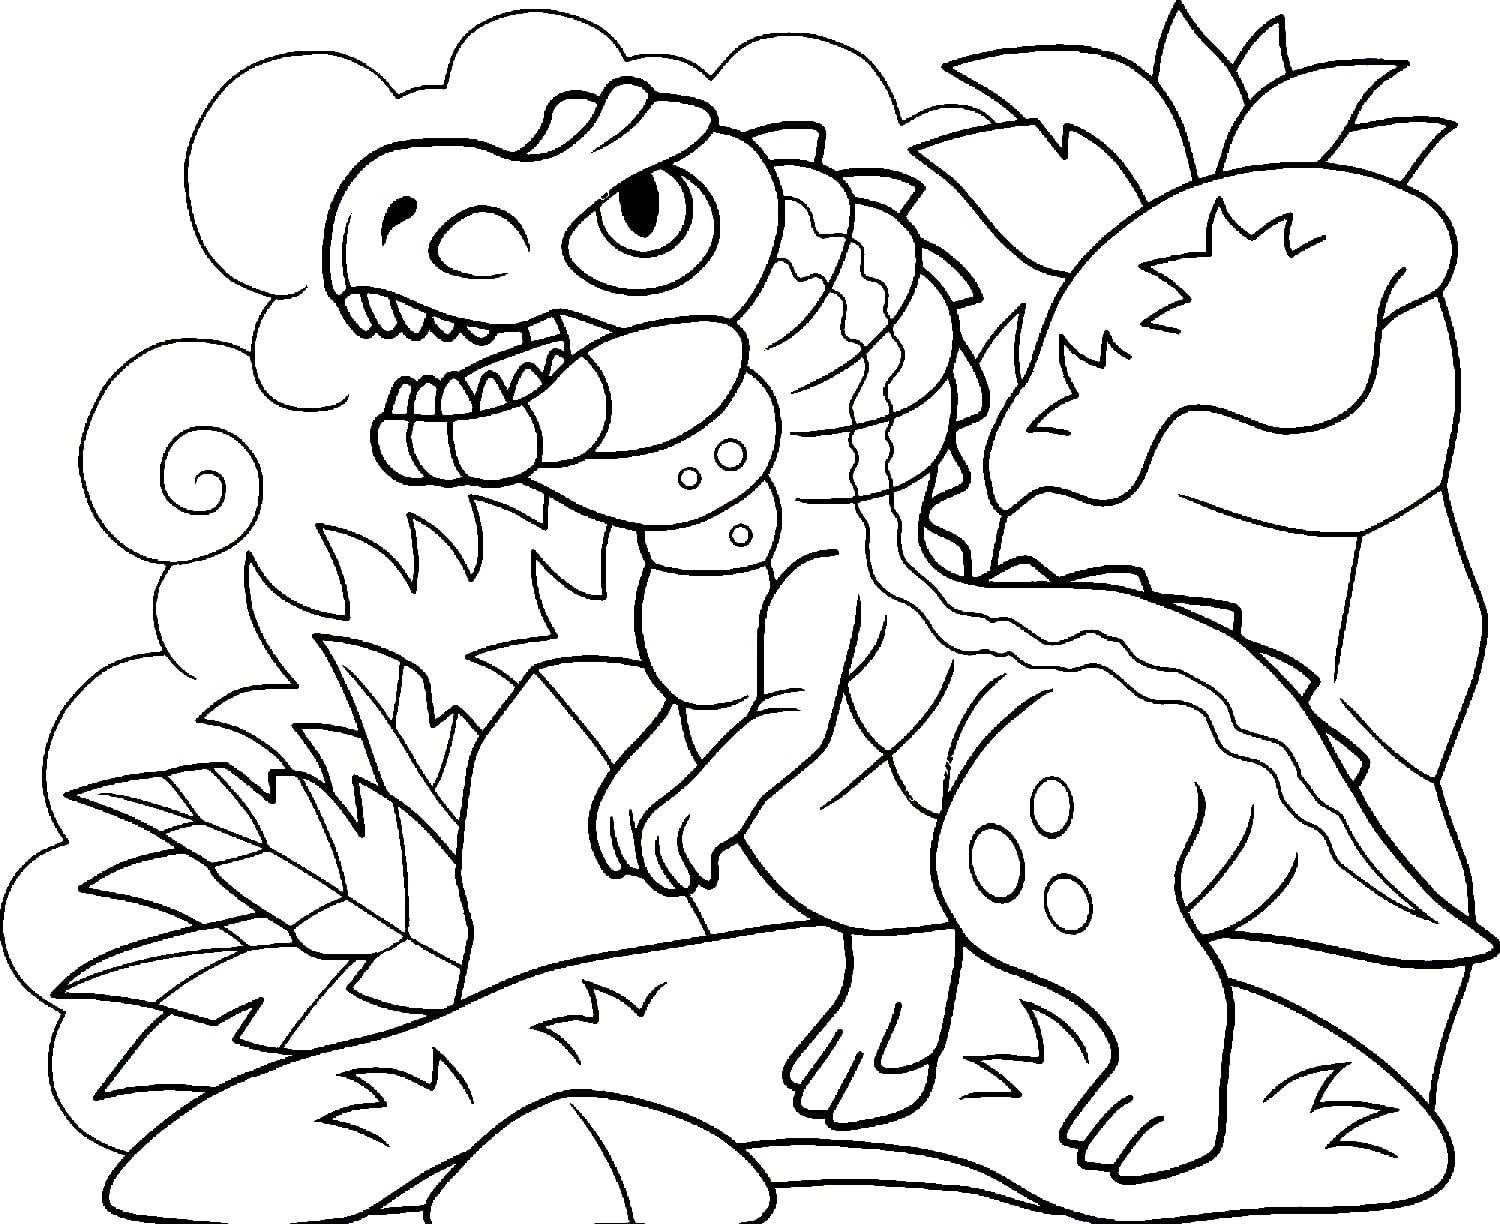 Coloriage Dinosaure  120 Coloriages À Imprimer Pour Enfants dedans Coloriage Dinosaures 